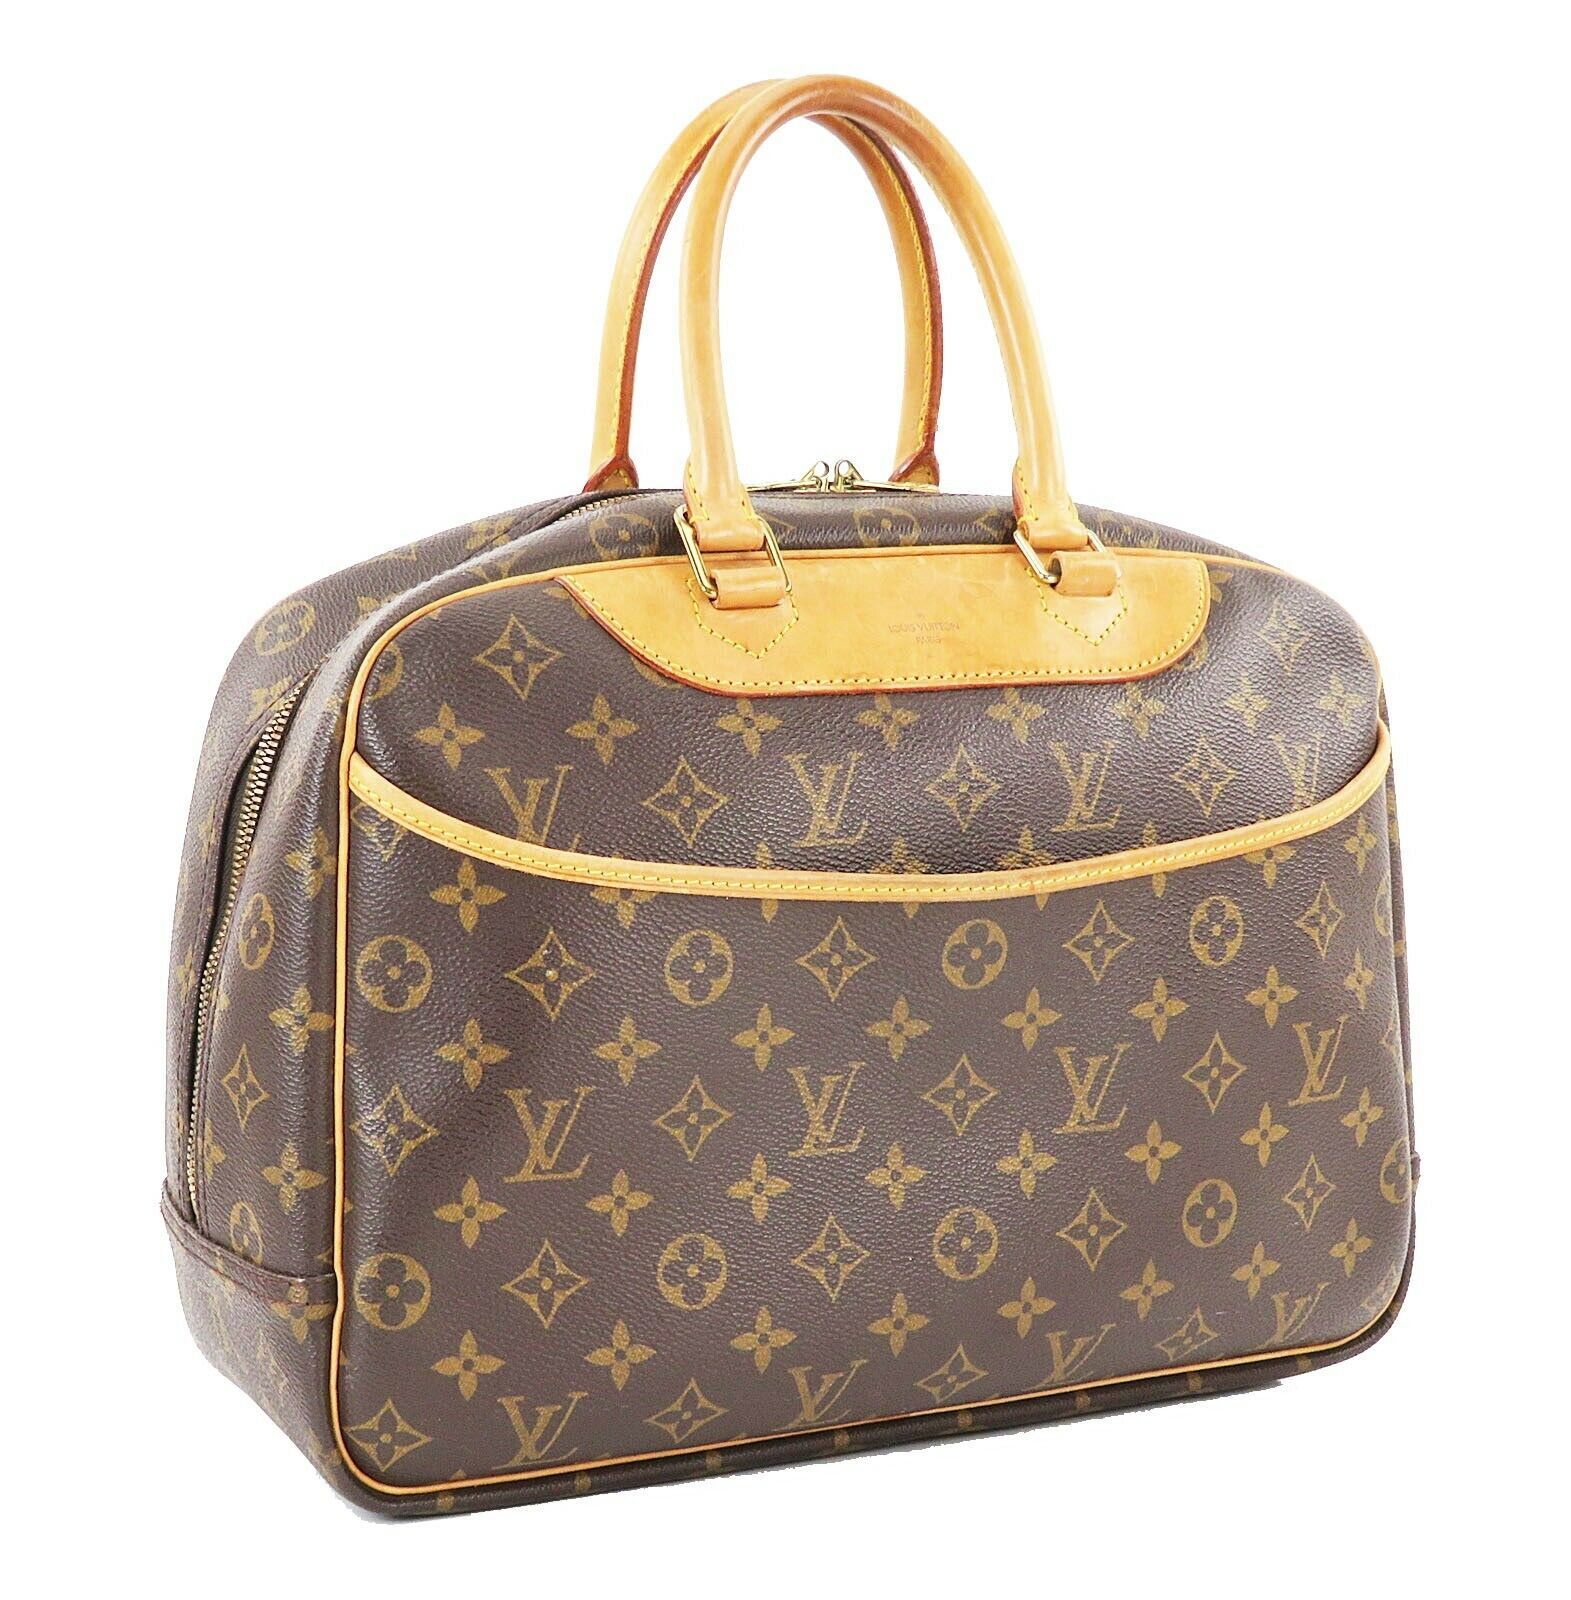 Authentic LOUIS VUITTON Deauville Monogram Hand Bag Purse #32335 - Women&#39;s Handbags & Bags